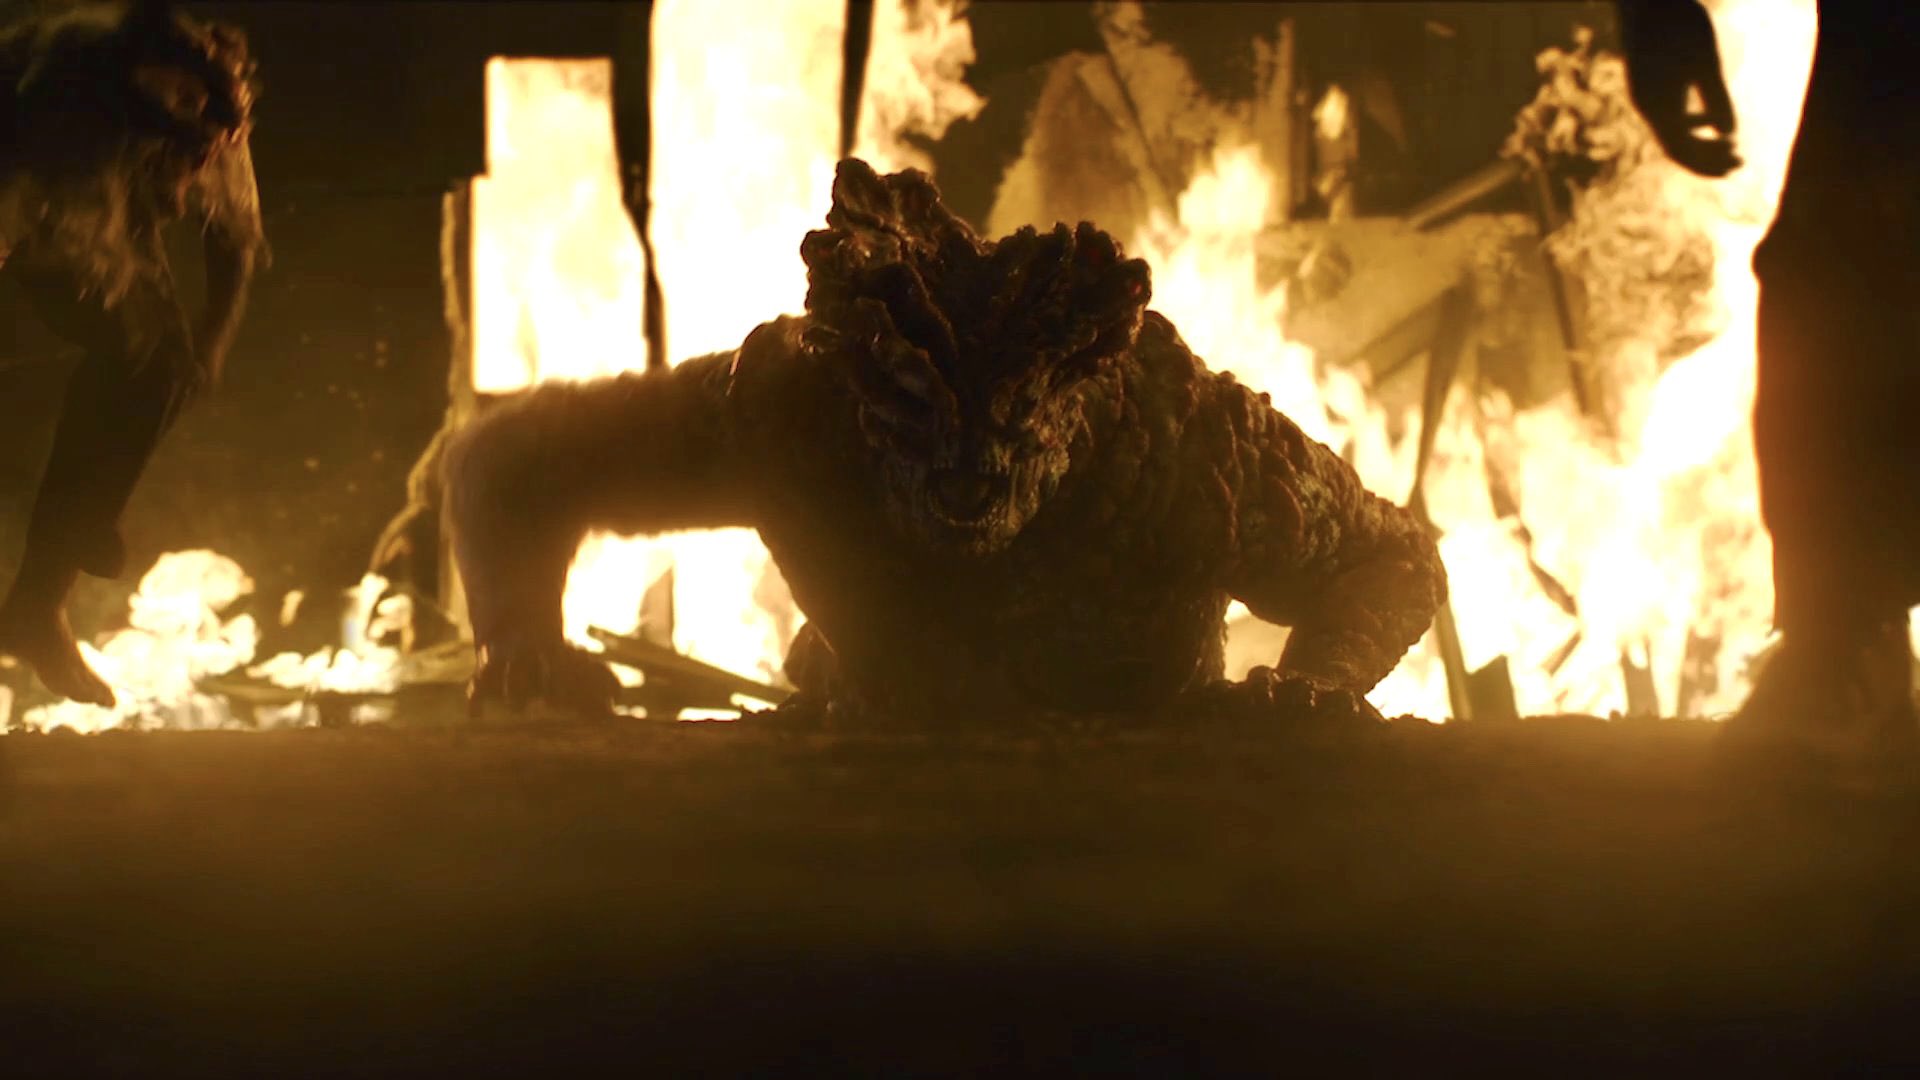 Imagem retirada de episódio da série The Last of Us da HBO